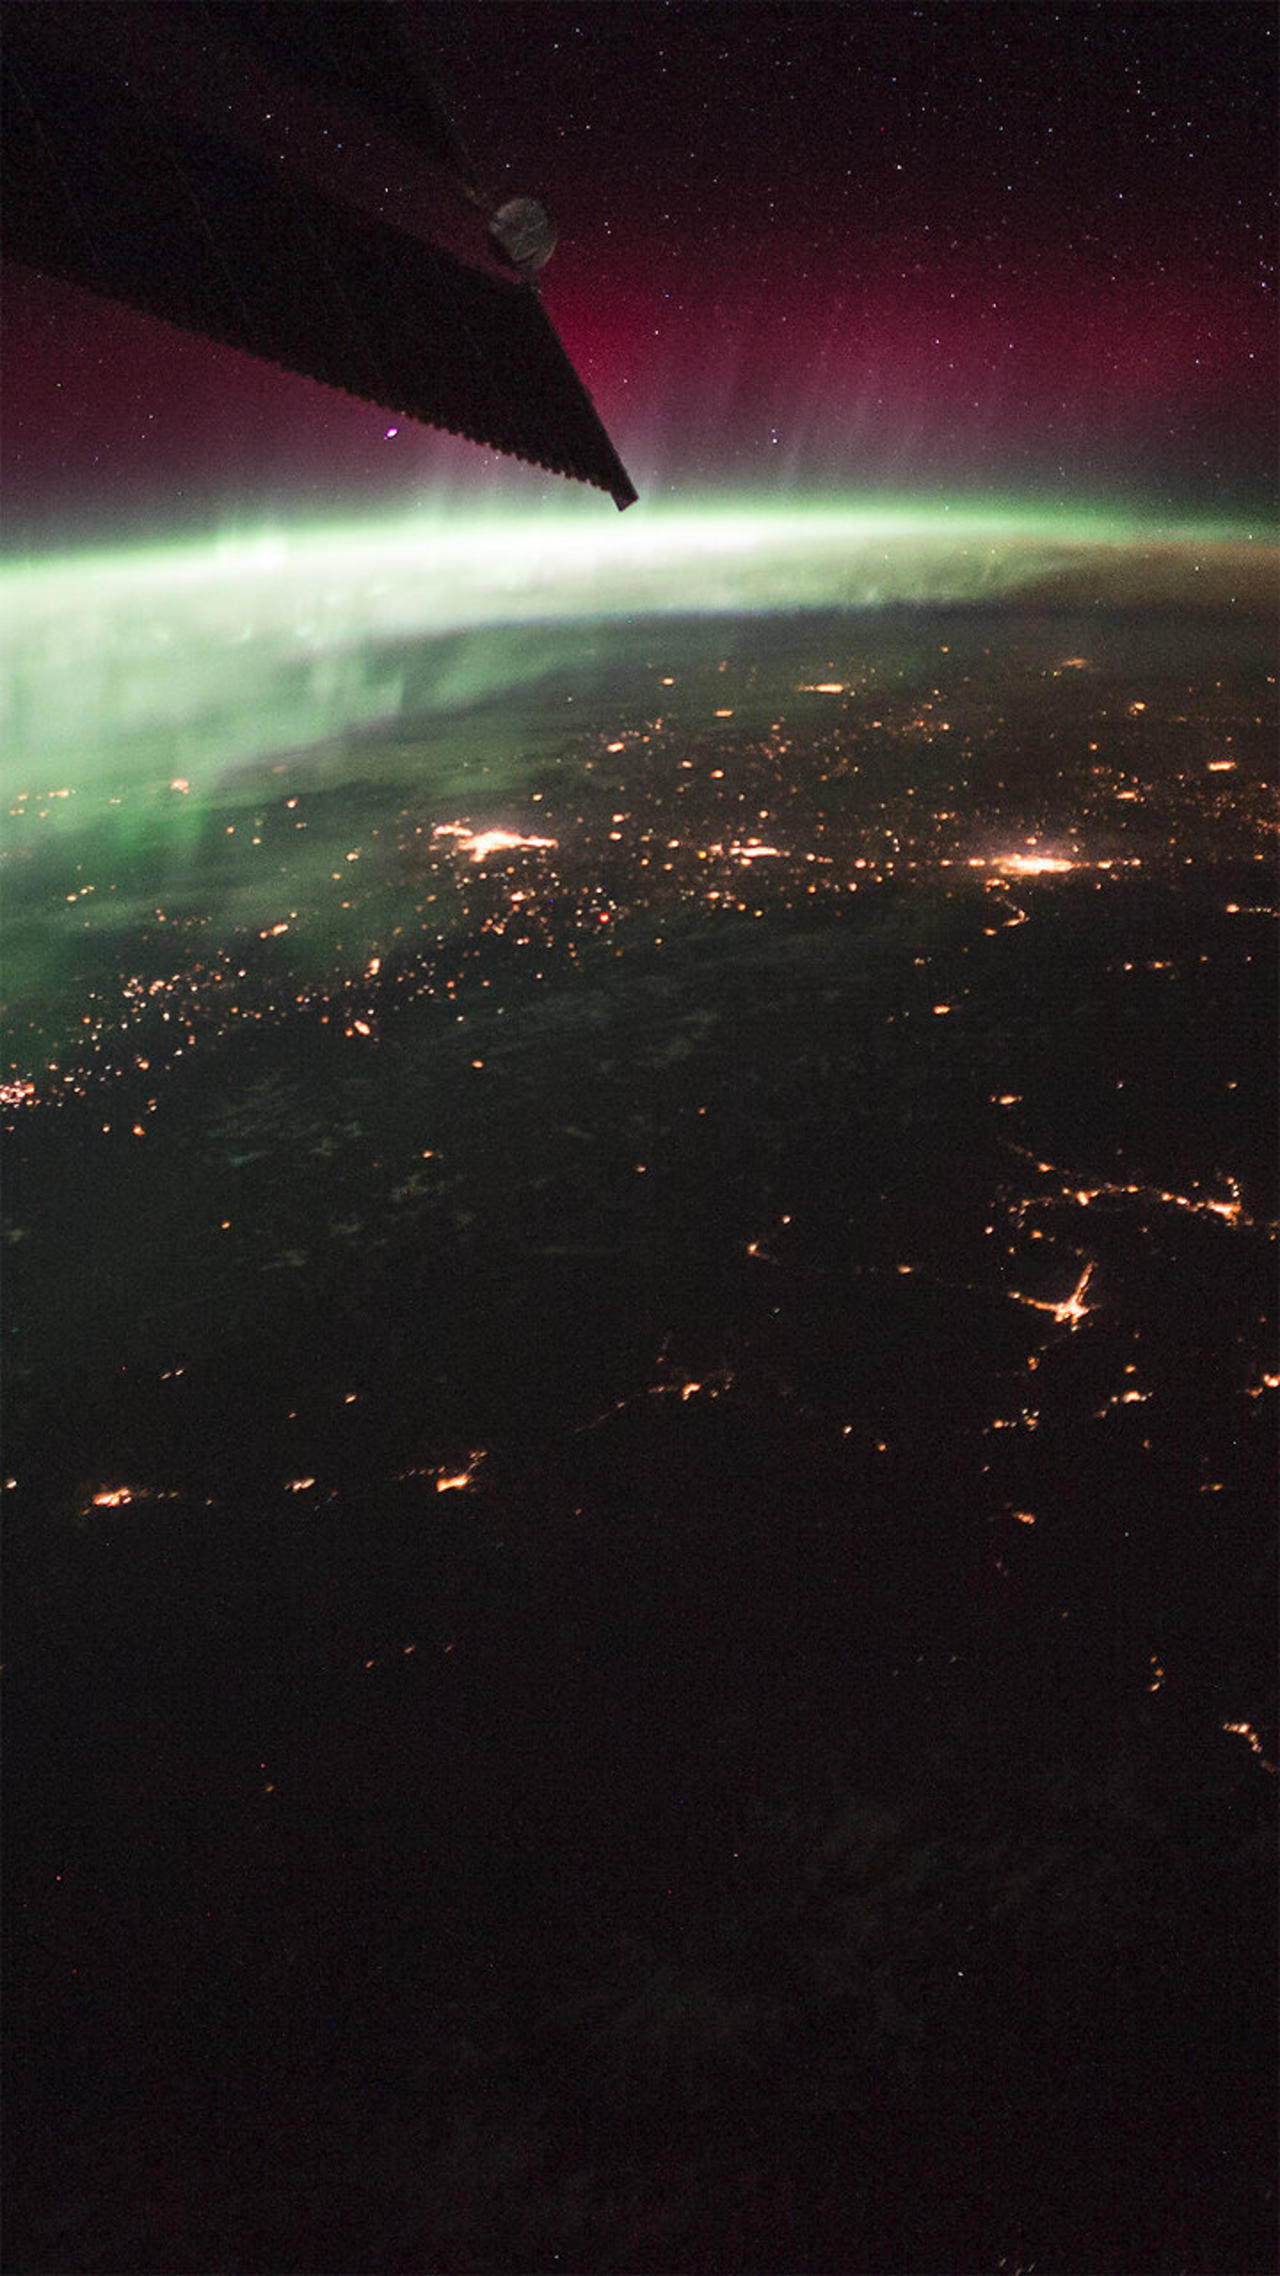 Som ET - 83 - Earth - ISS 053-E-53022-54020 - Aurora Borealis over North America